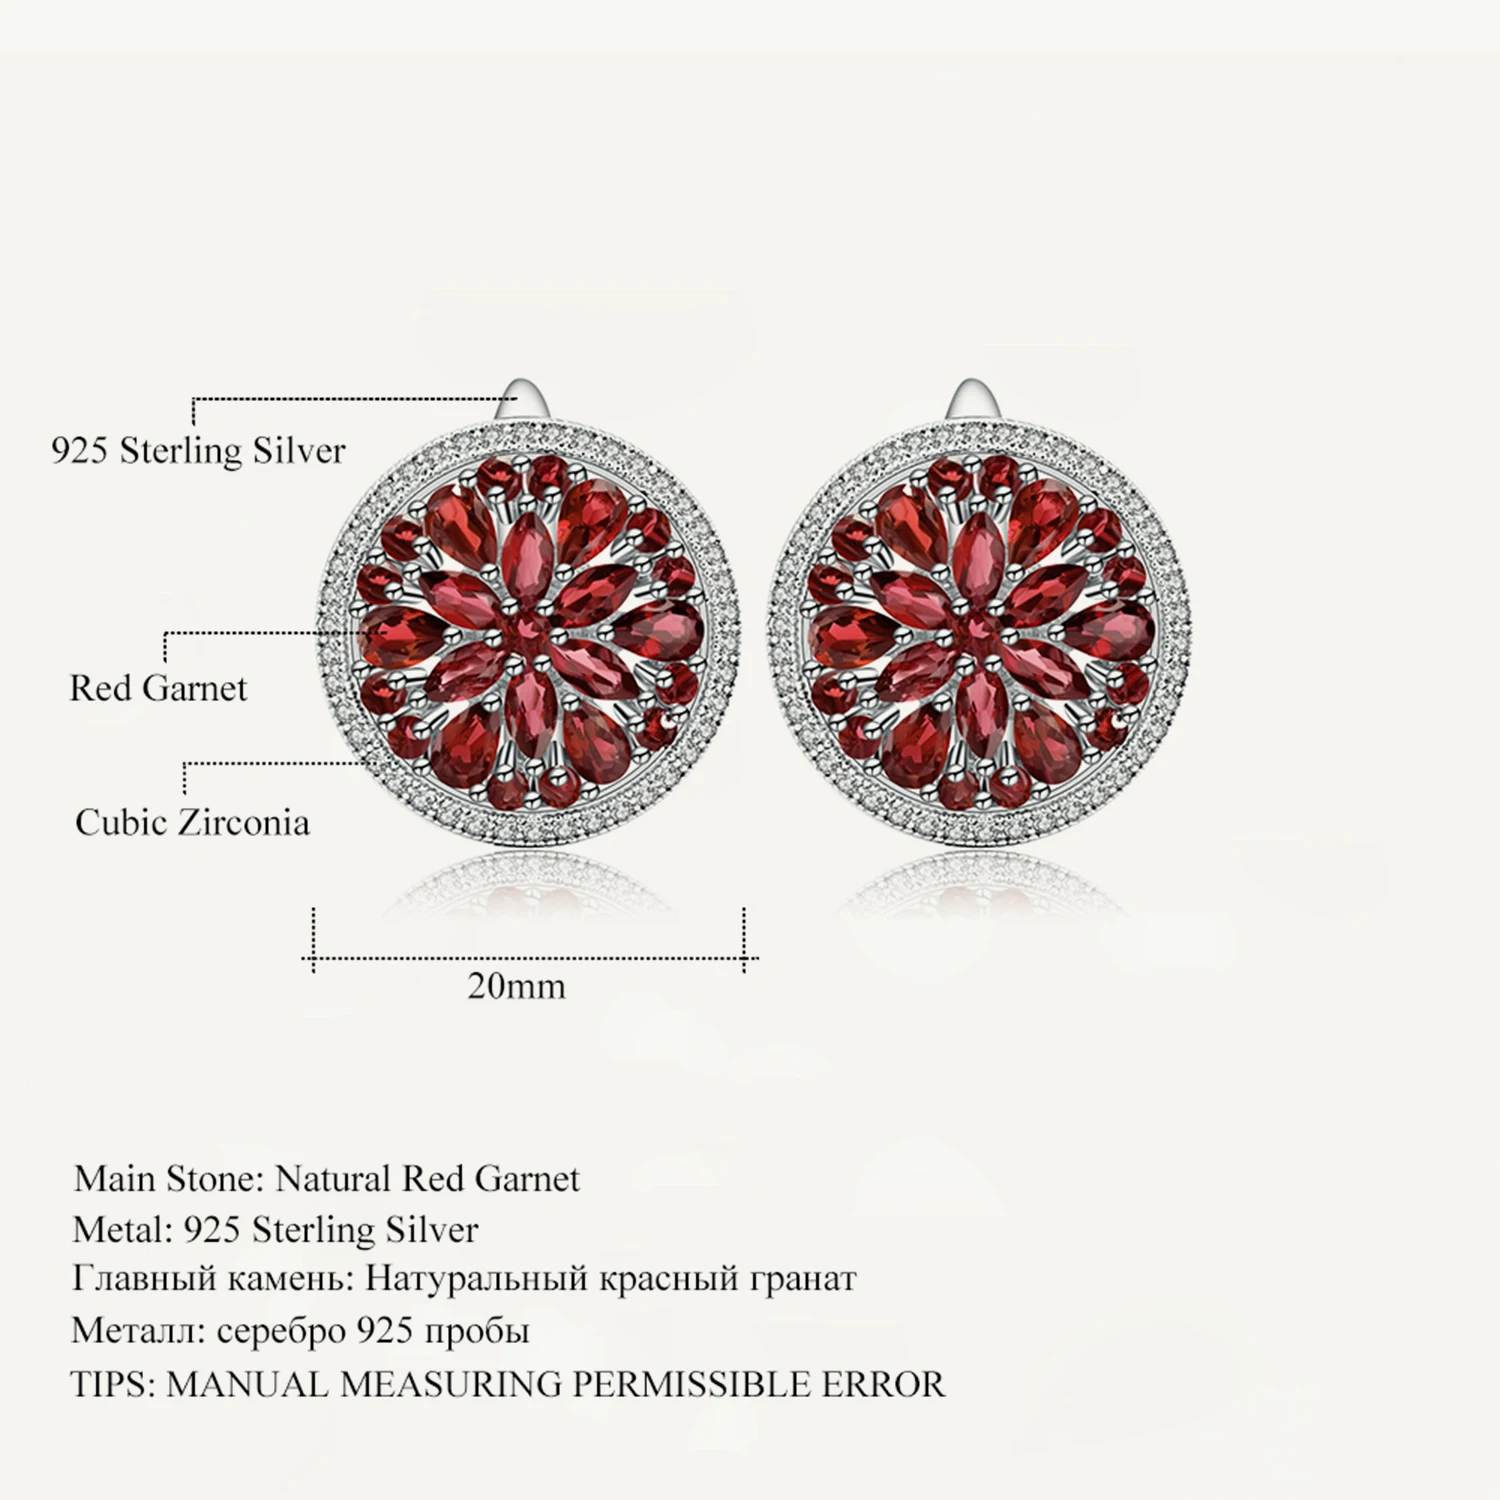 

GEM'S BALLET Luxury 7.76Ct Natural Red Garnet Gemstone Earrings 925 Sterling Silver Stud Earrings for Women Wedding Fine Jewelry